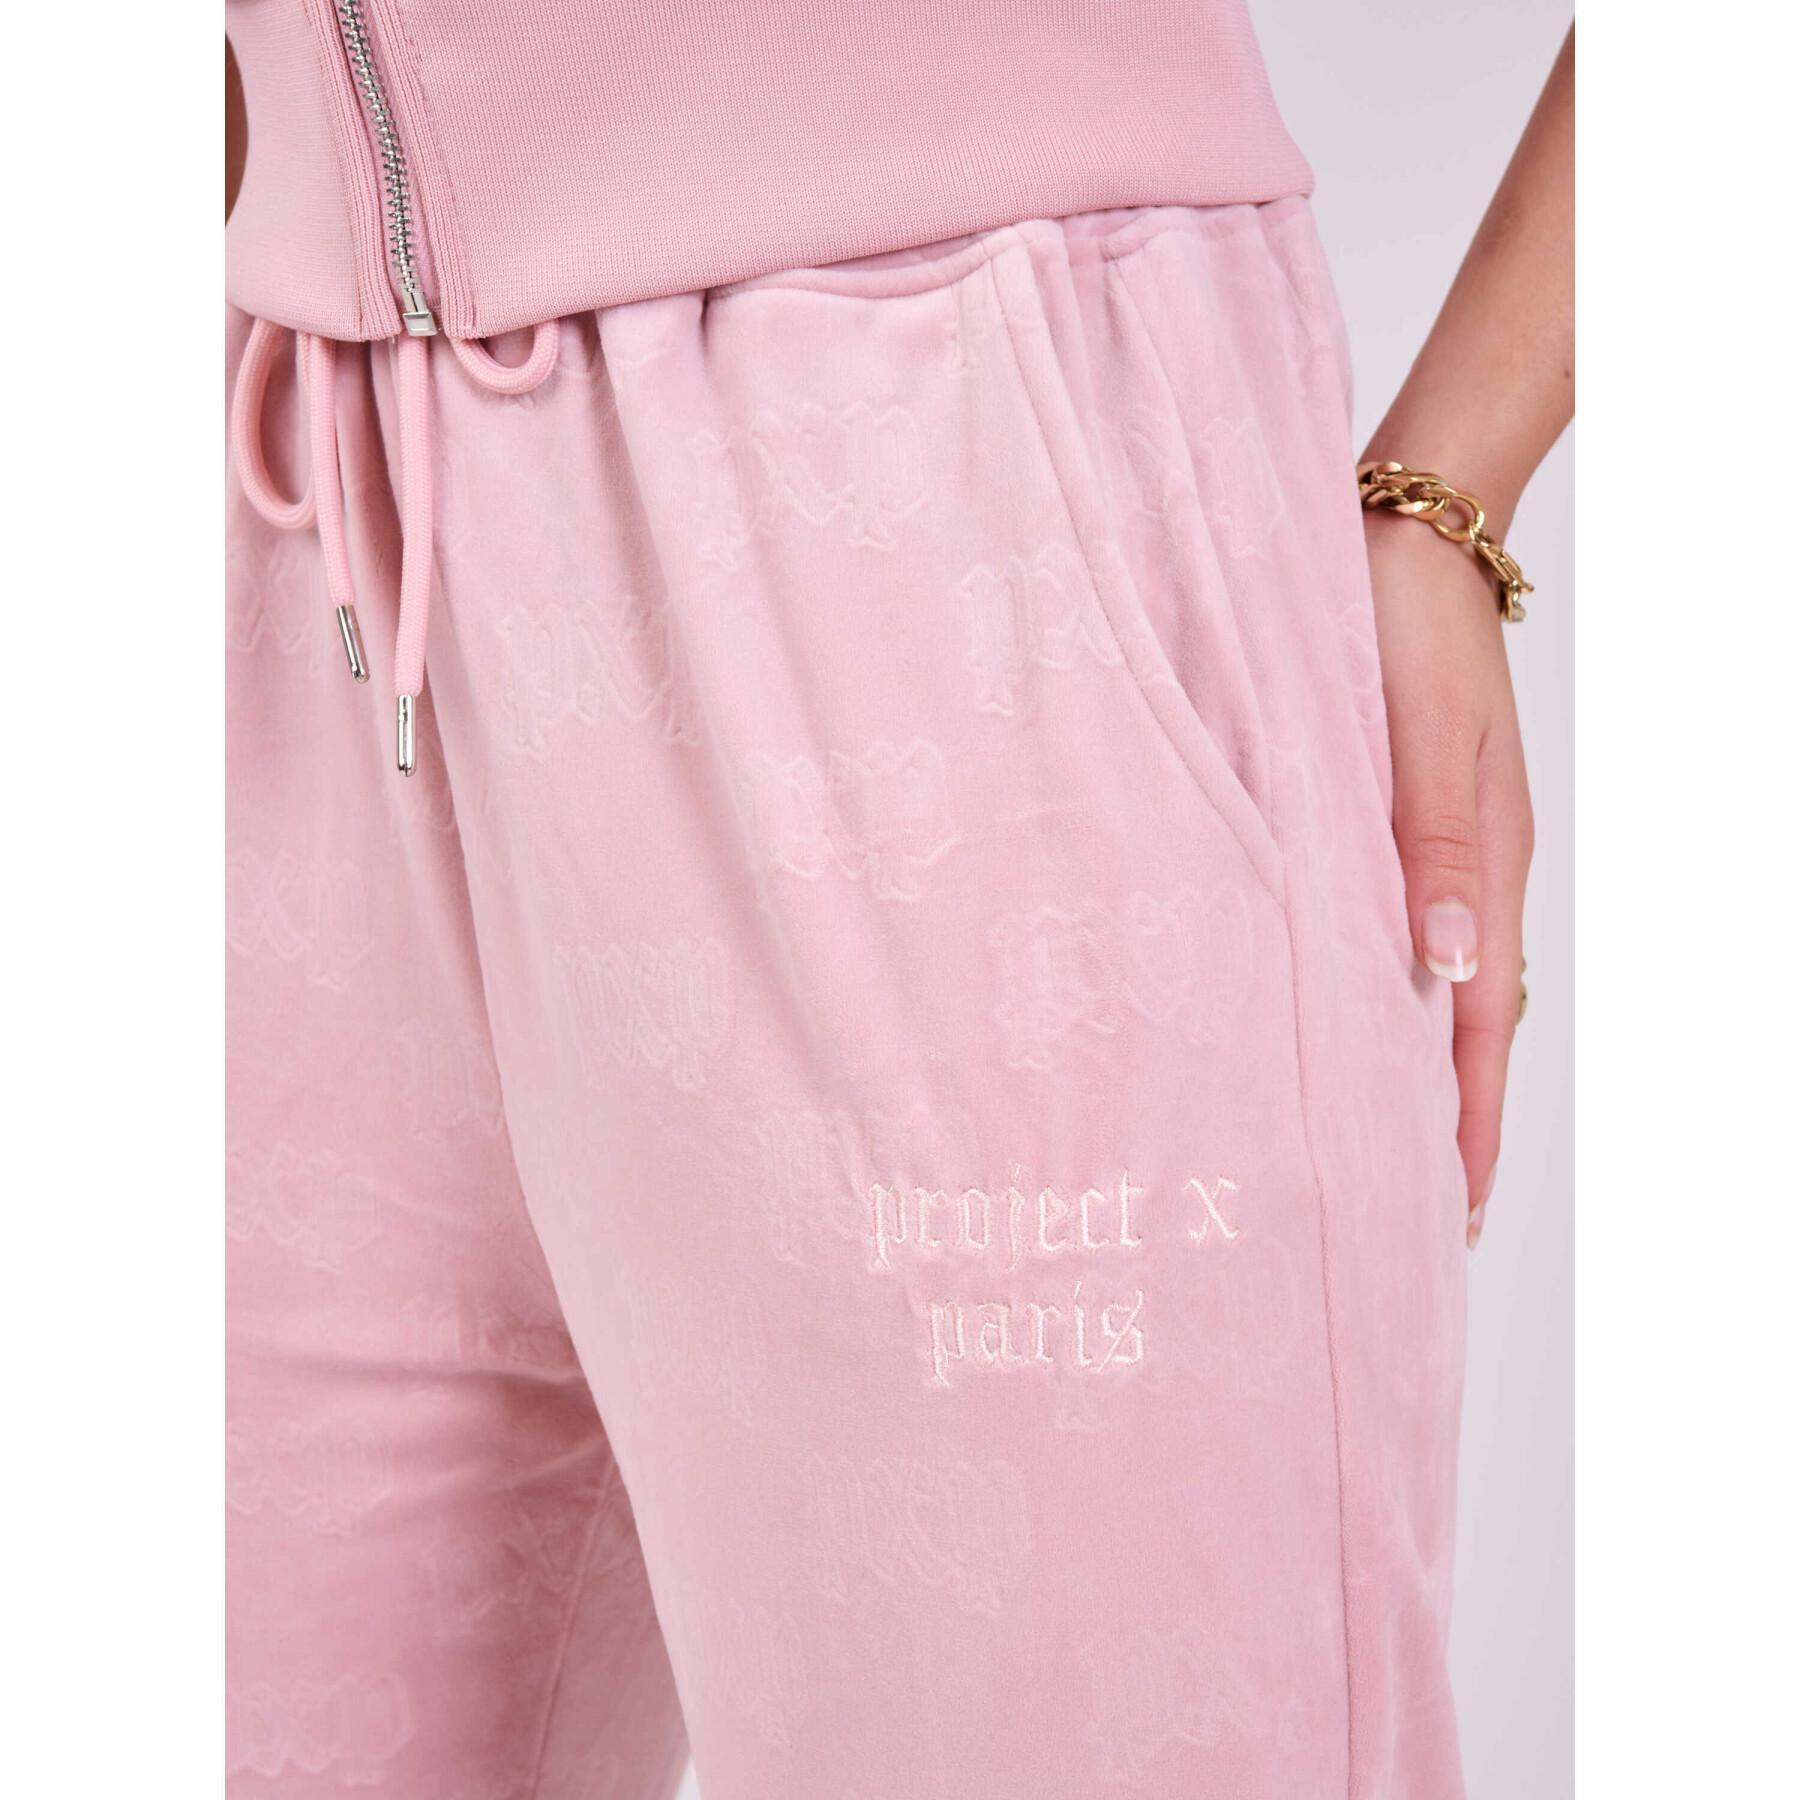 Loszittende fluwelen broek voor dames Project X Paris